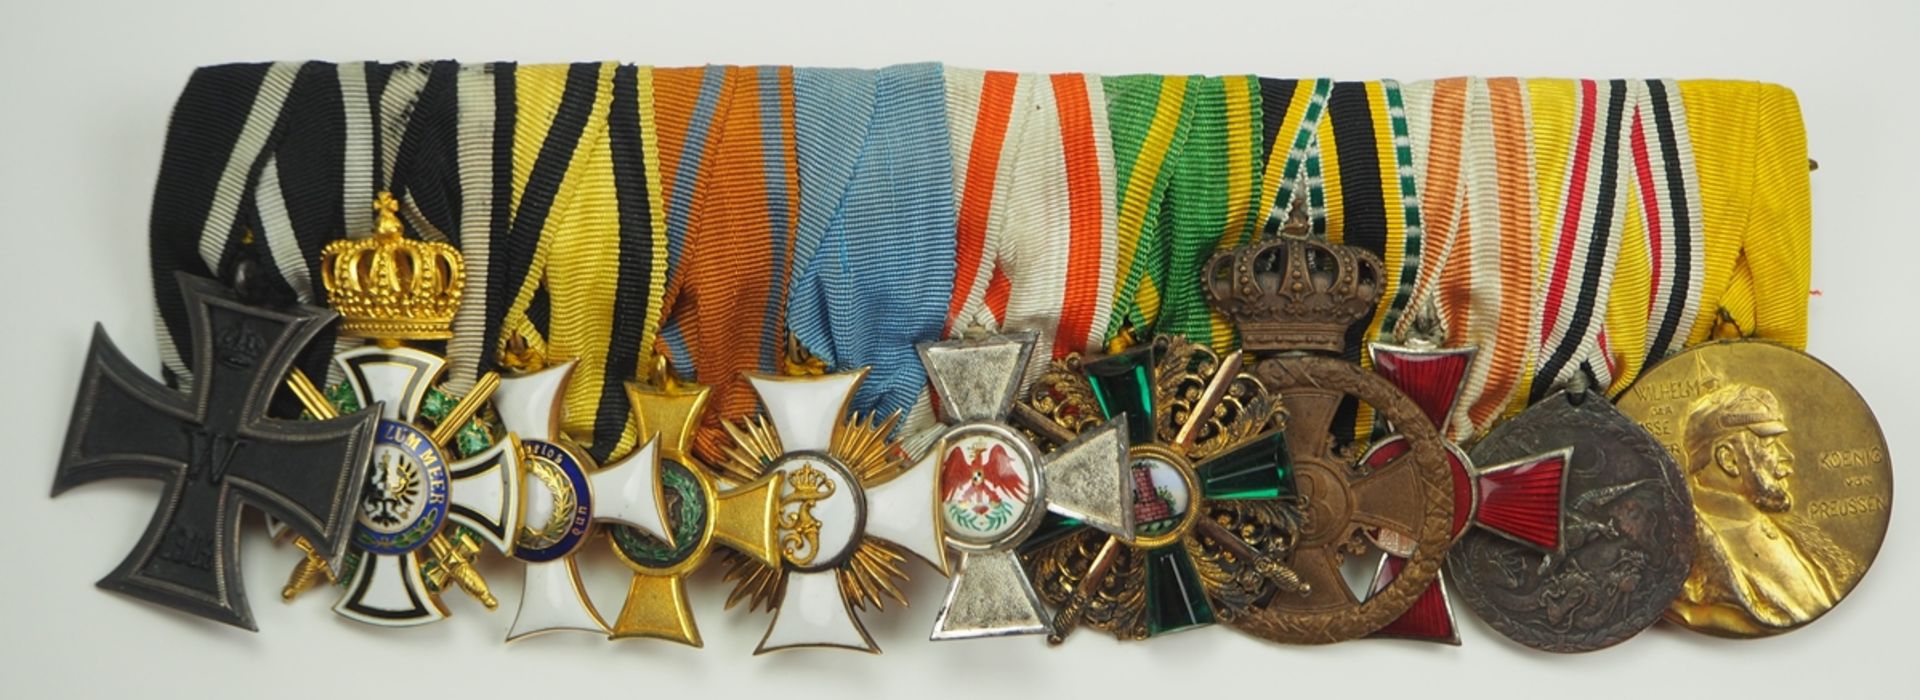 Generalmajor Karl Sauter - Ordenschnalle mit 11 Auszeichnungen.